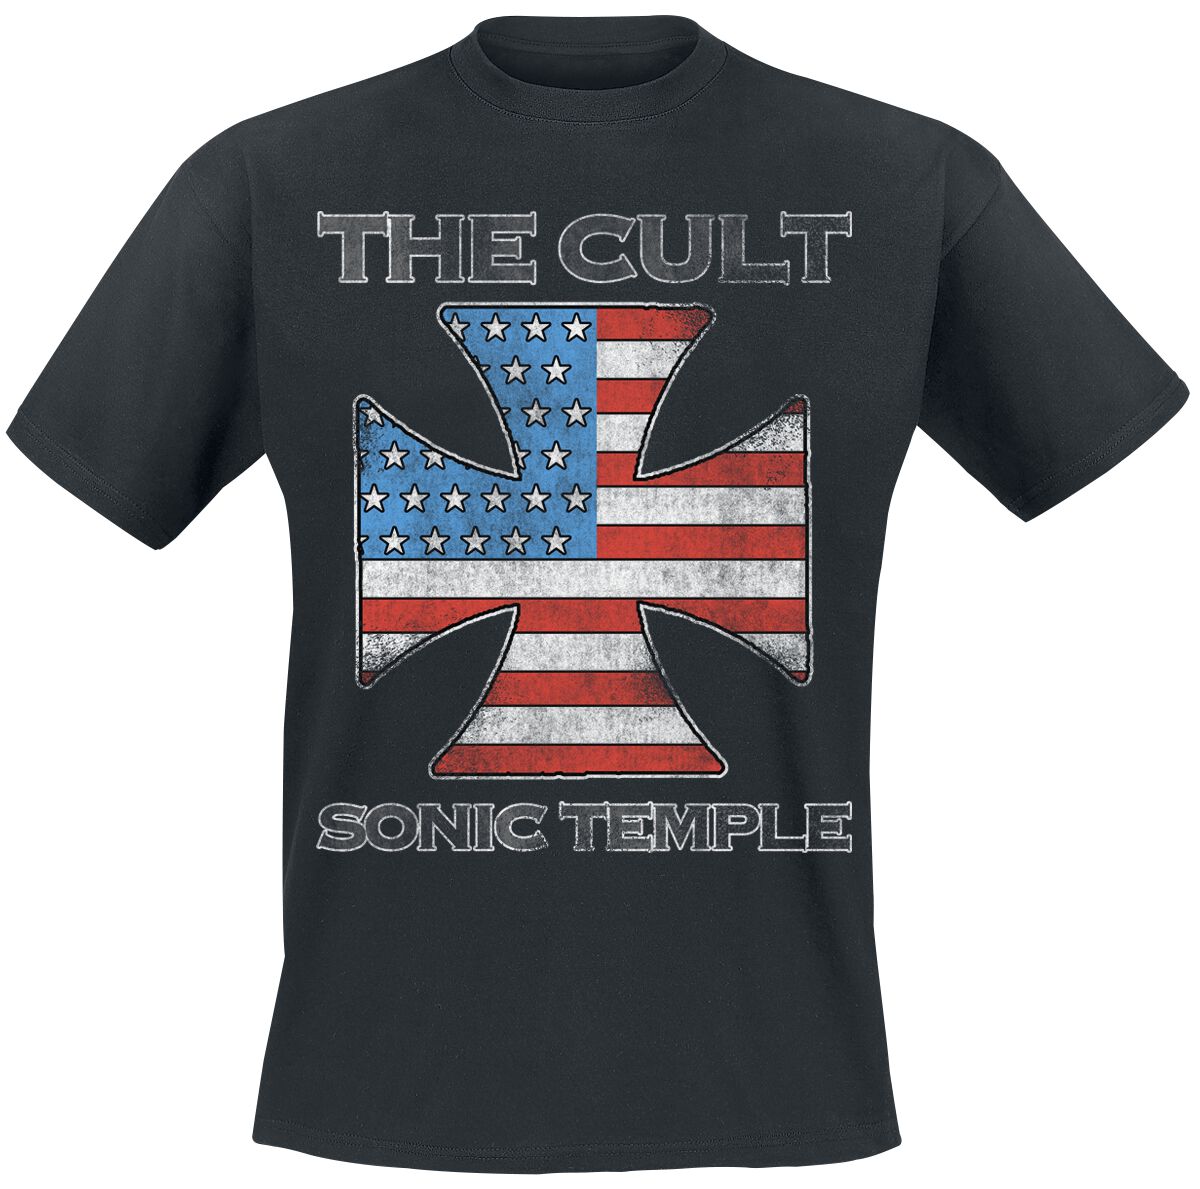 The Cult T-Shirt - US IRON CROSS - S bis 4XL - für Männer - Größe XXL - schwarz  - Lizenziertes Merchandise!